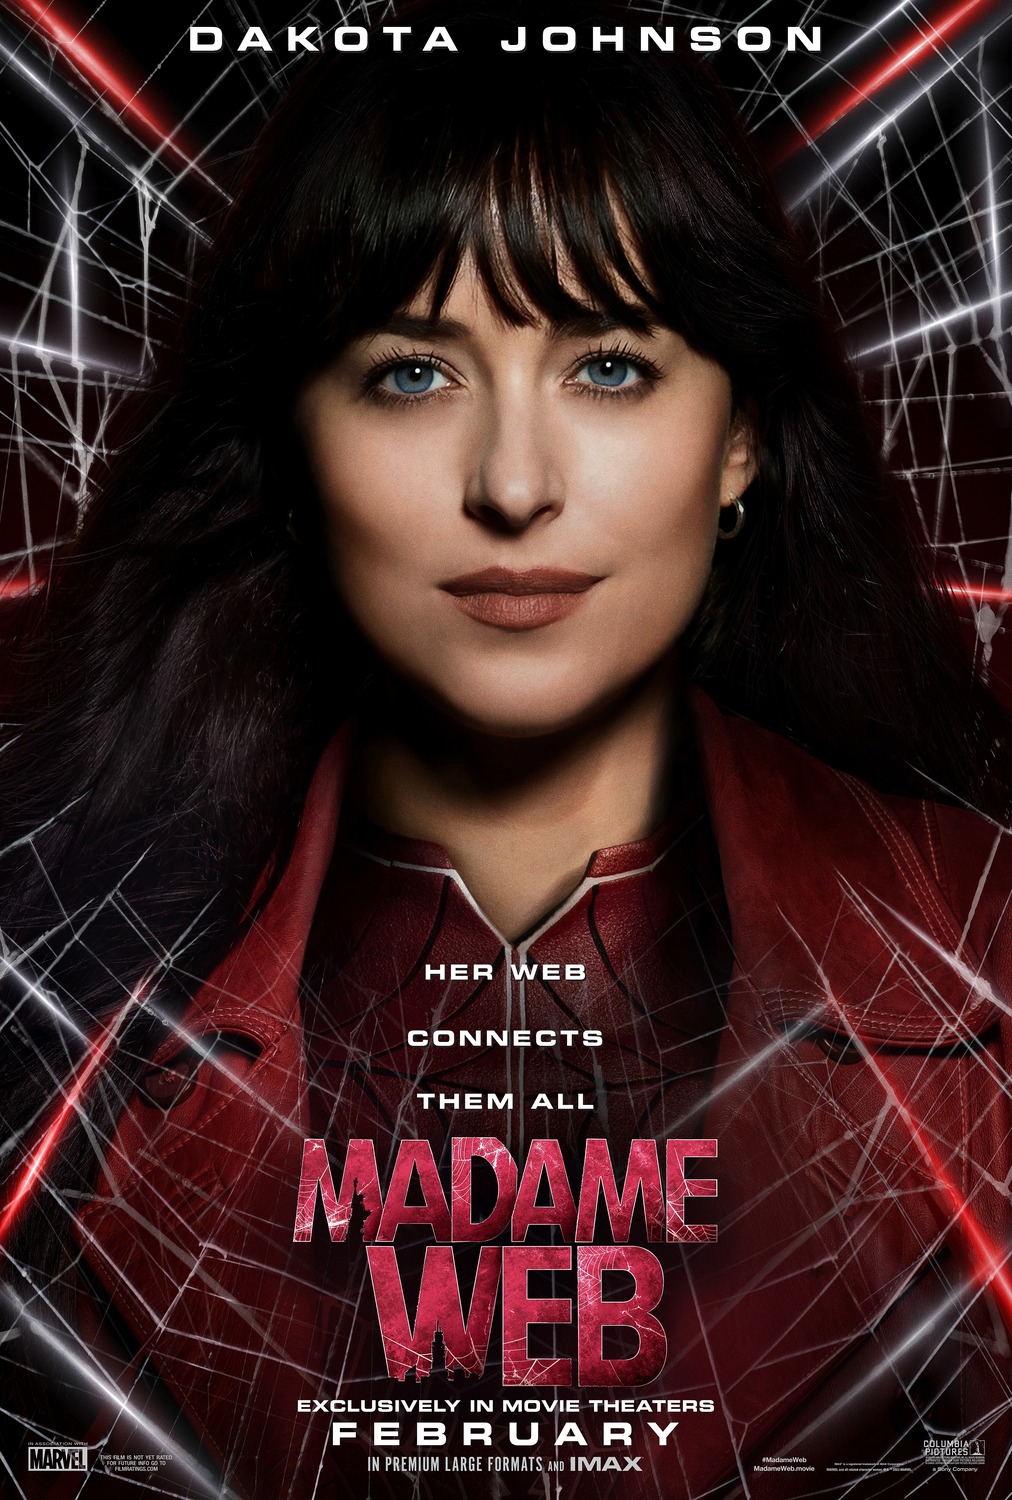 Madame Web (#1 of 24): Extra Large Movie Poster Image - IMP Awards